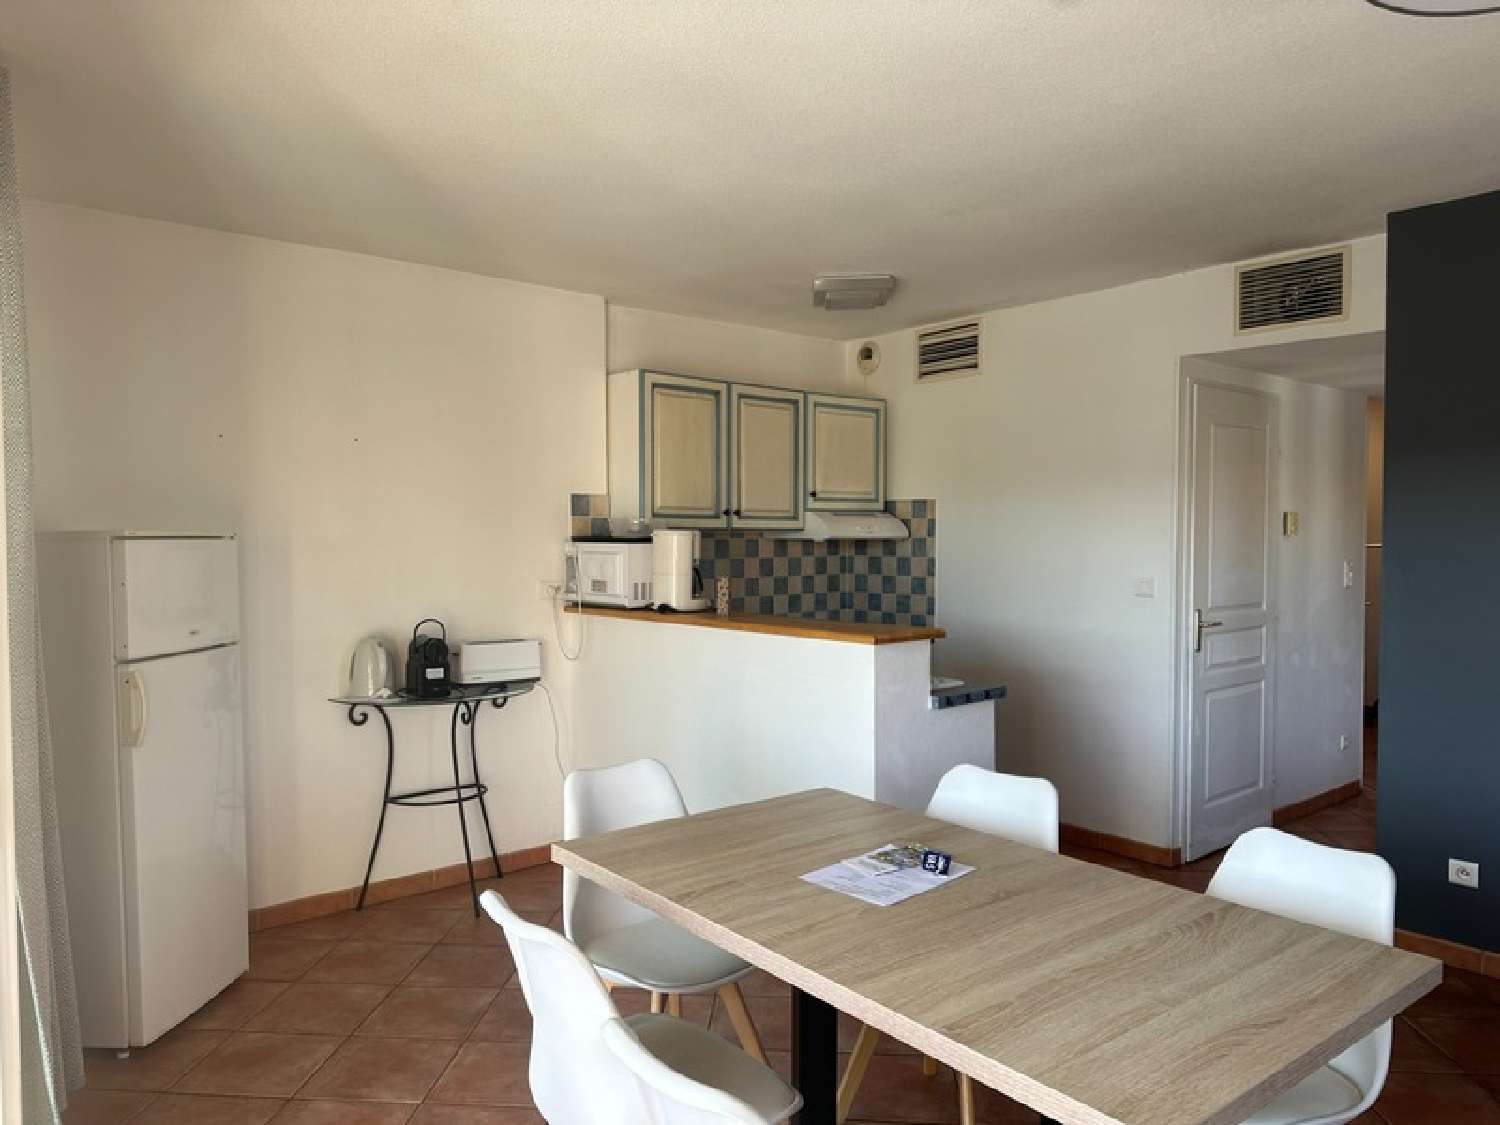  à vendre appartement Gréoux-les-Bains Alpes-de-Haute-Provence 4